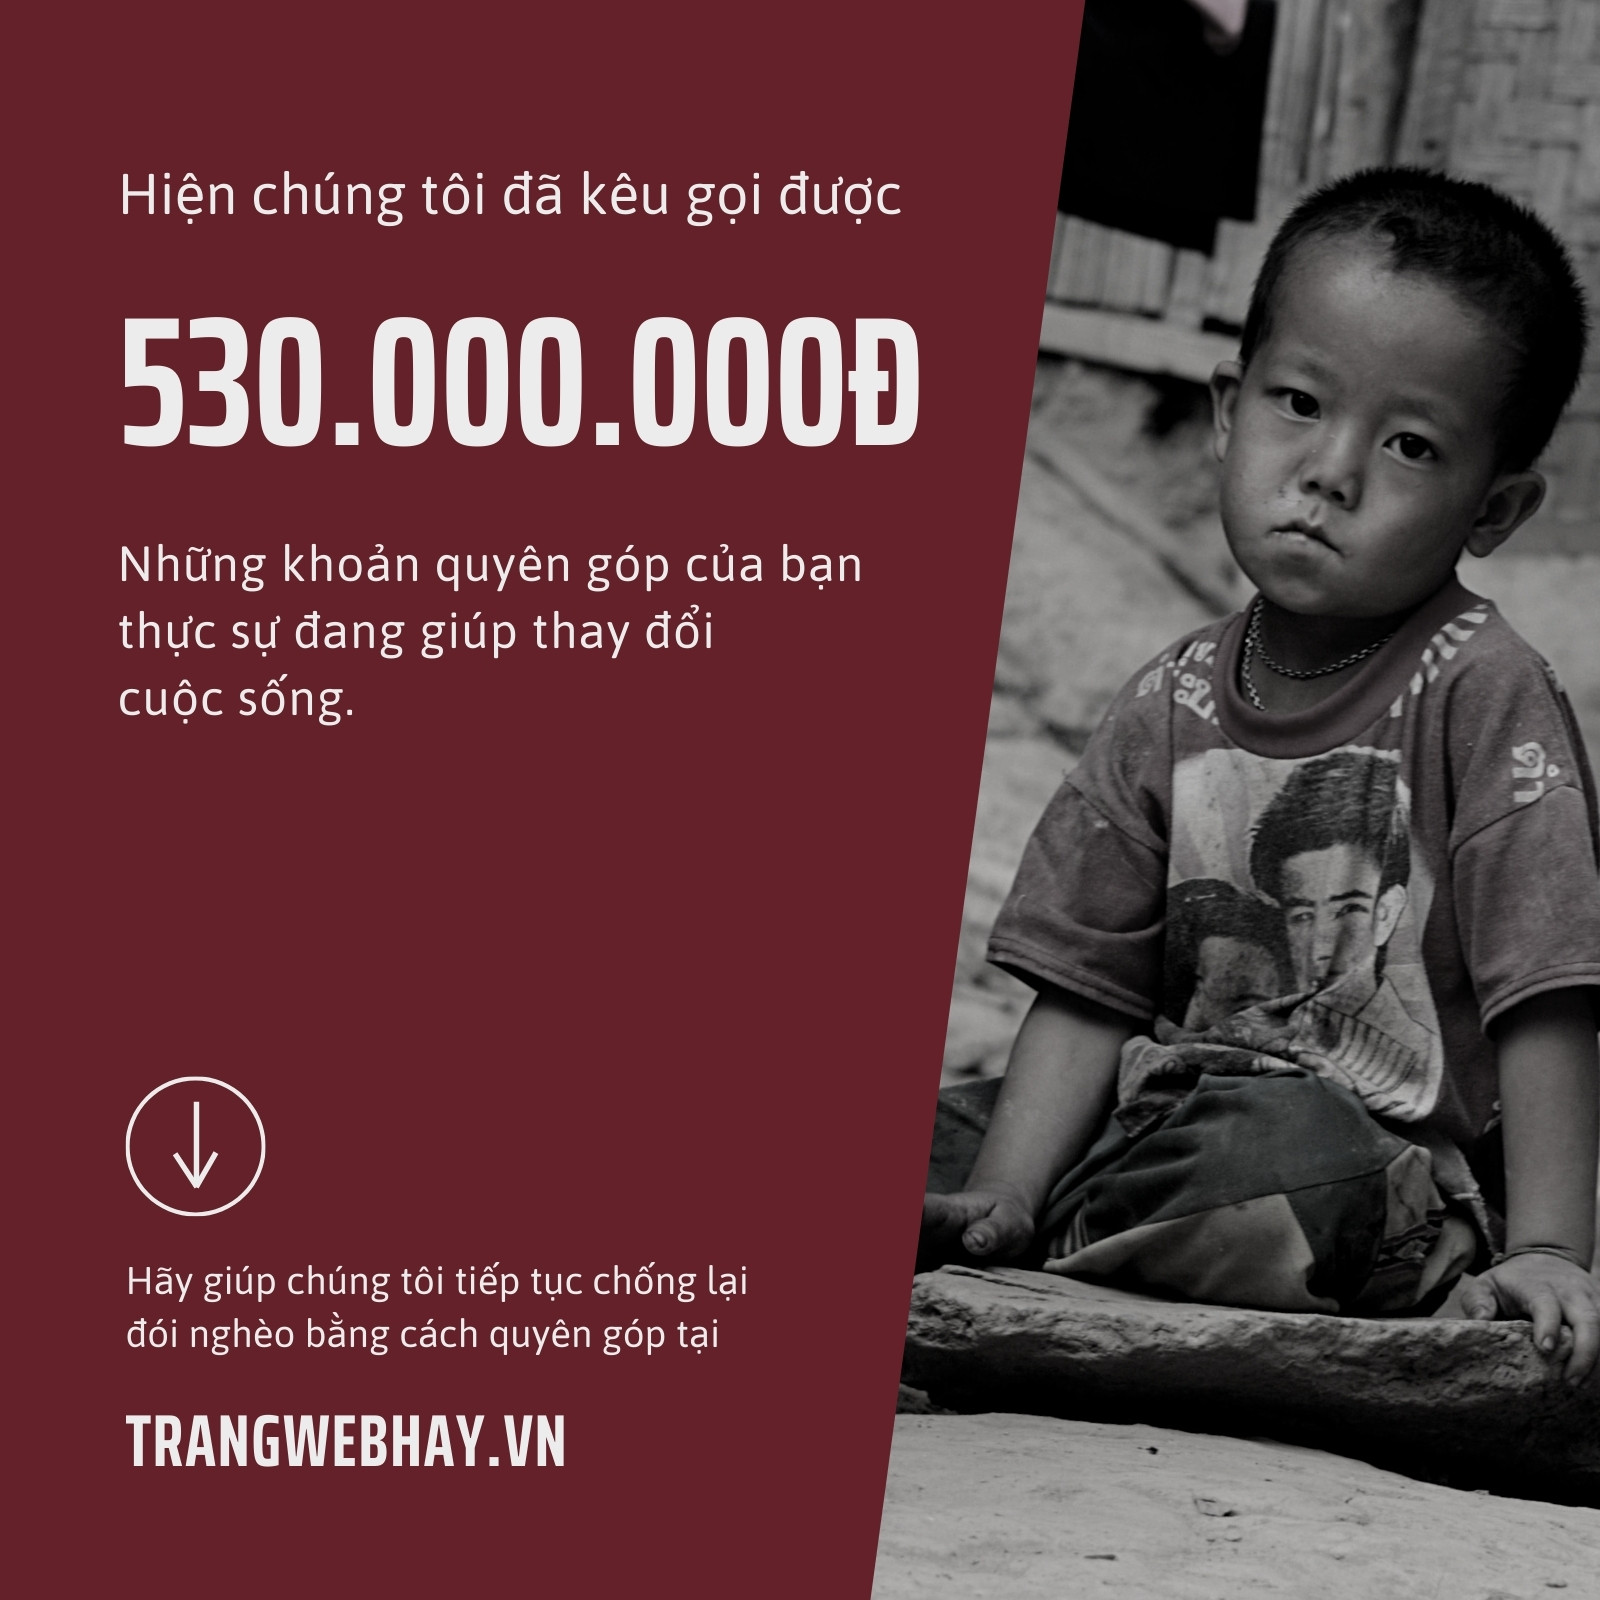 Thêm 68 triệu người châu Á rơi vào cảnh nghèo đói cùng cực